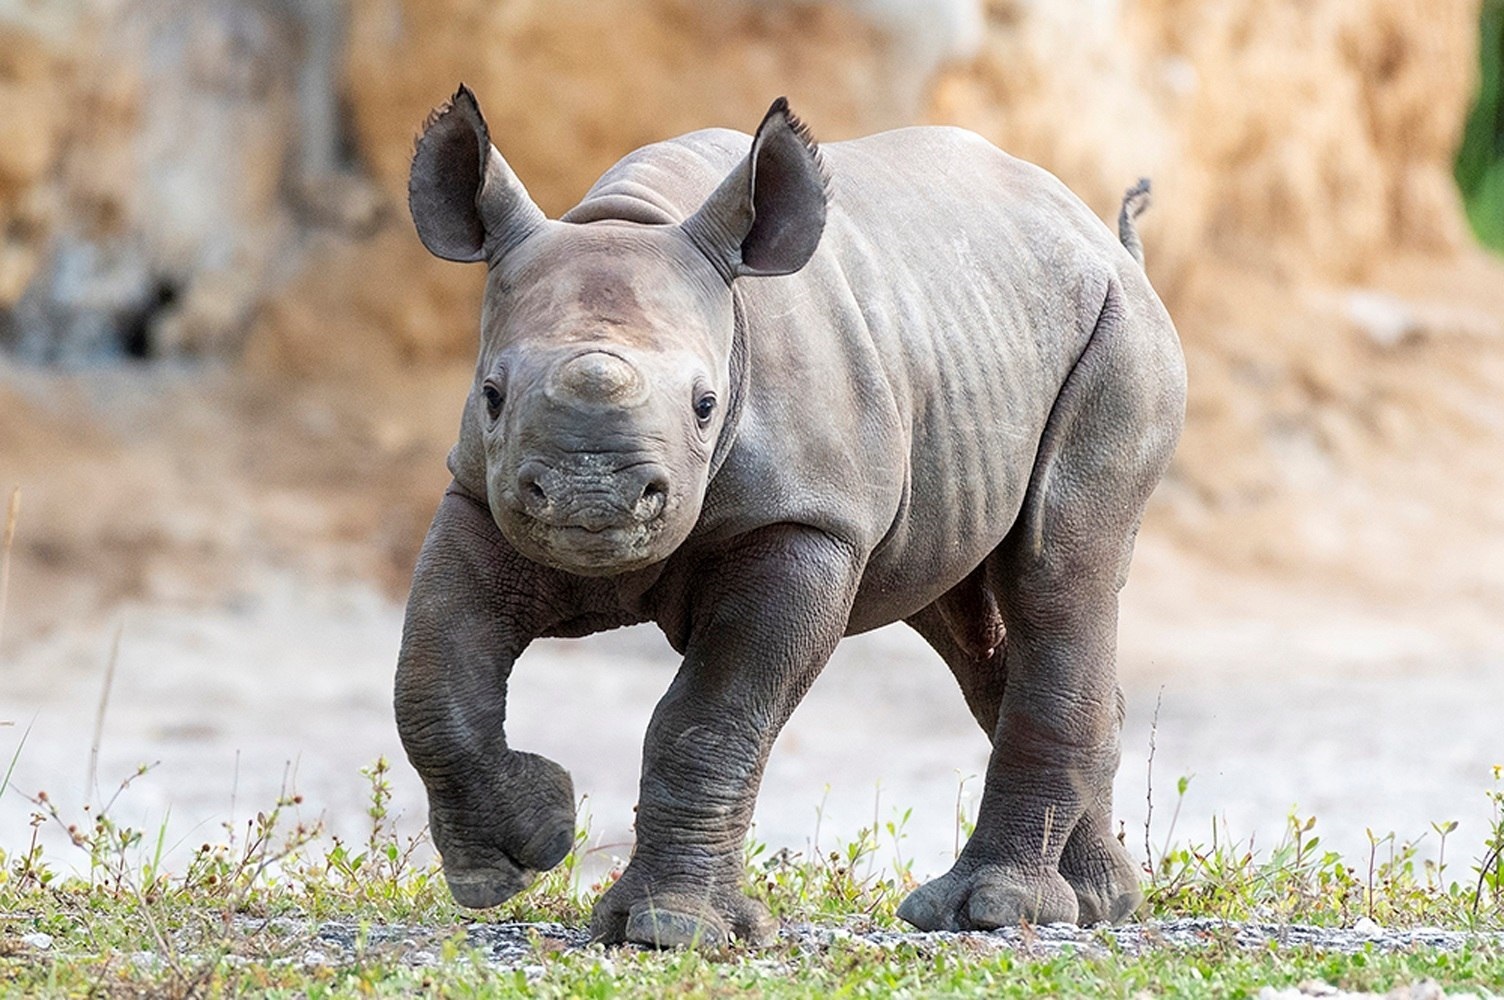 Los rinocerontes pueden llegar a vivir 60 años en condiciones favorables (EFE)
